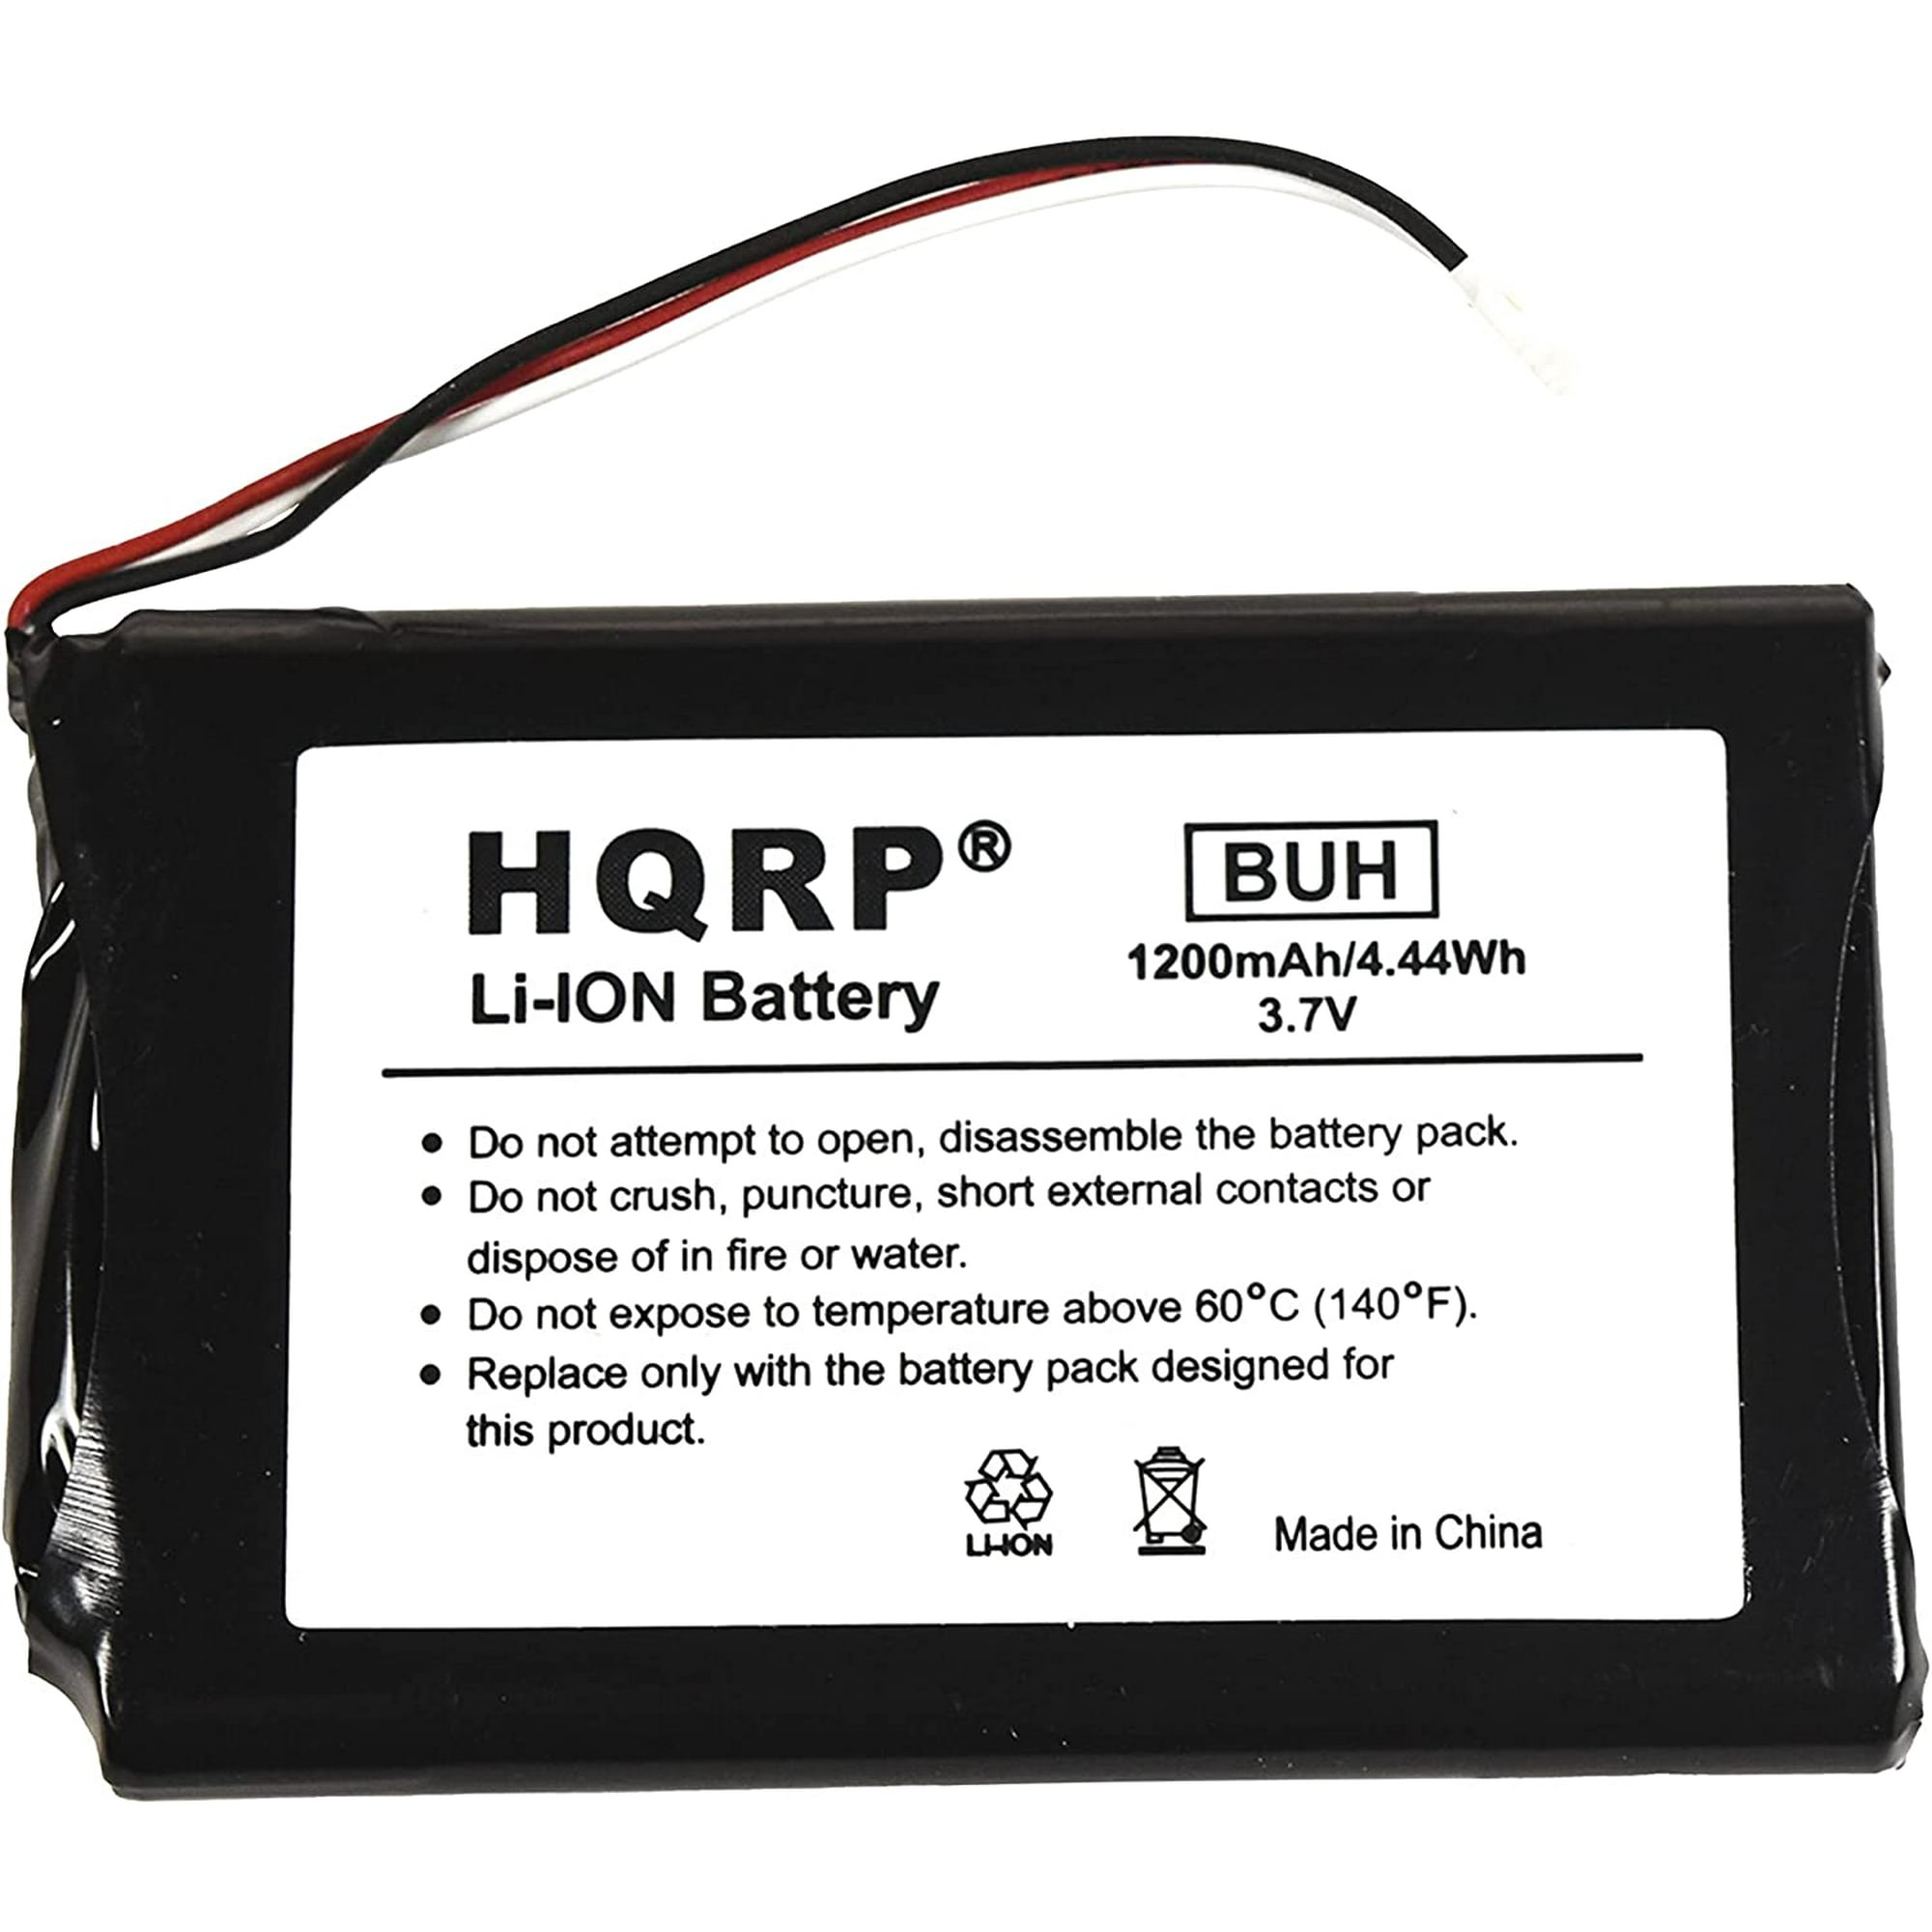 HQRP Battery for GARMIN Edge 800 KE37BE49D0DX3 Navigator - Walmart.com